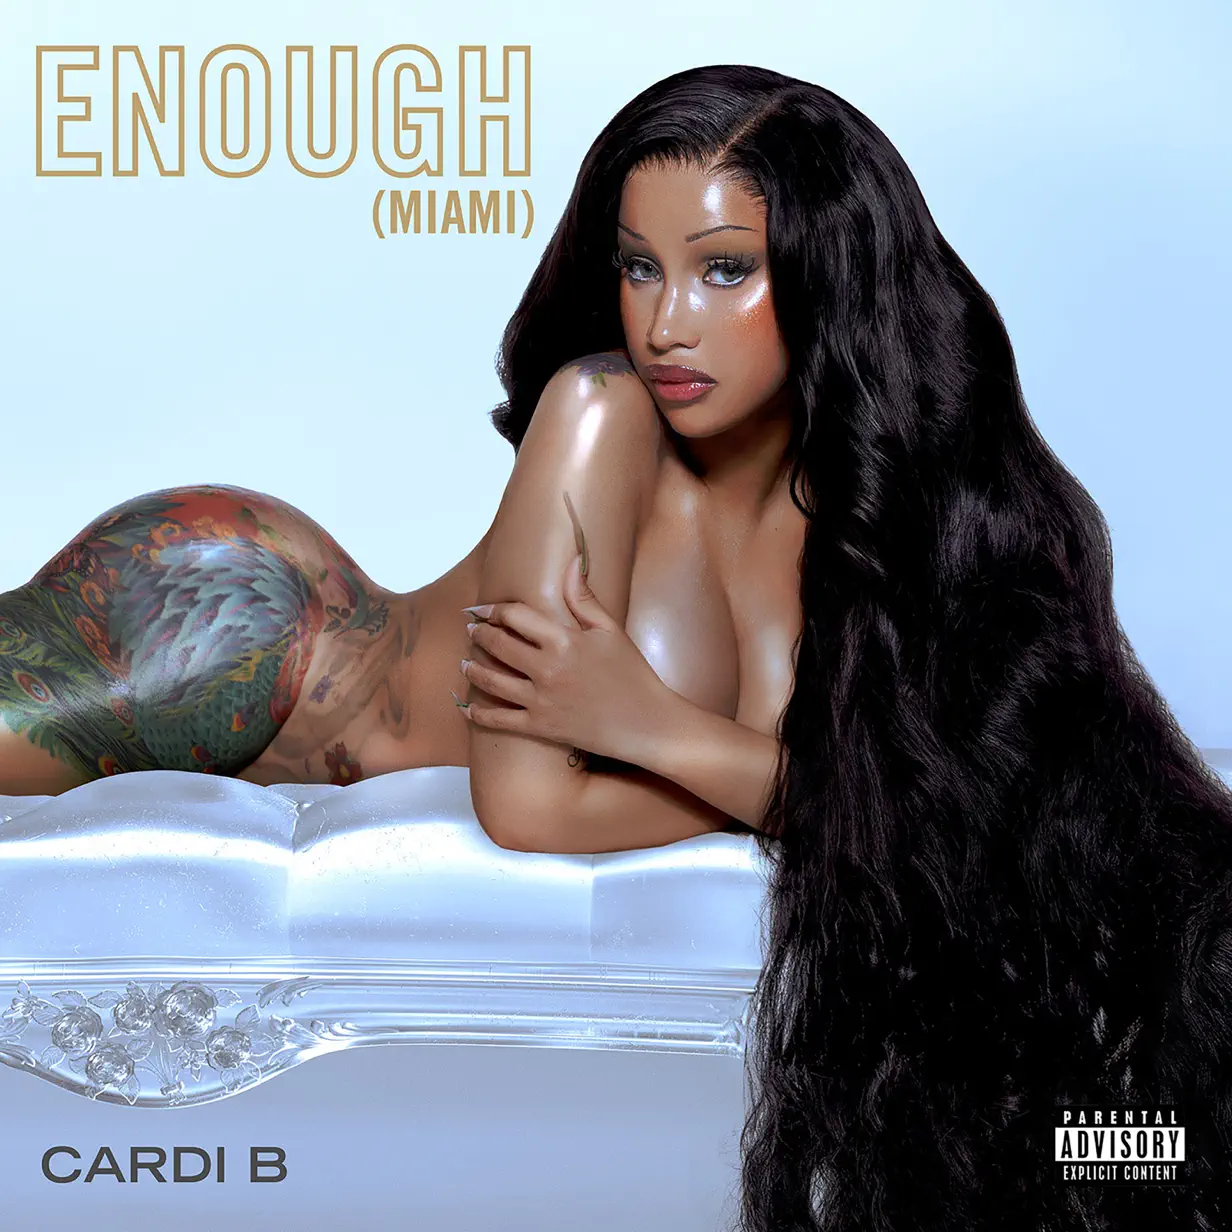 Cardi B‘s “Enough (Miami)” Leak Download MP3